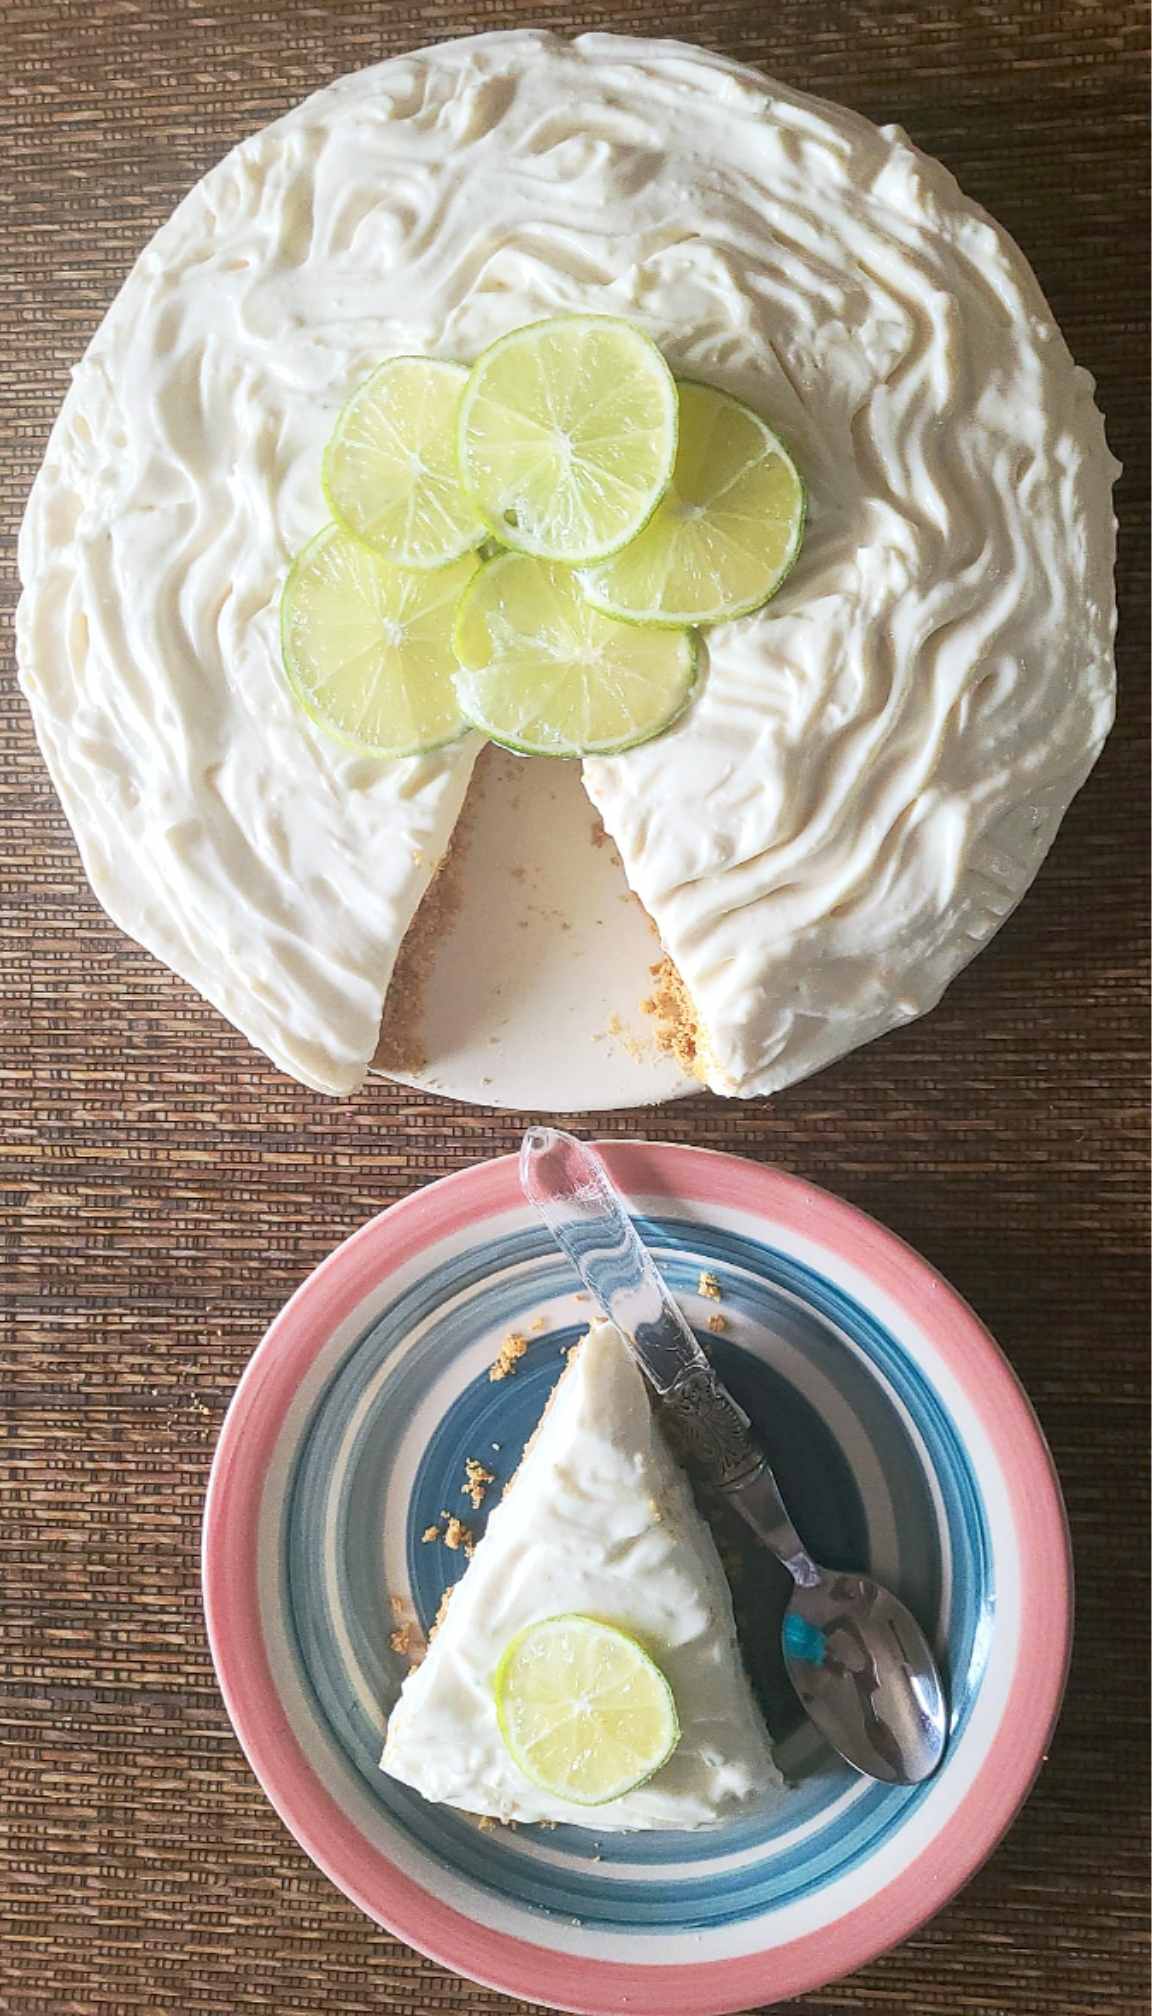 Cheesecake de limón sin horno - Las recetas de Tere